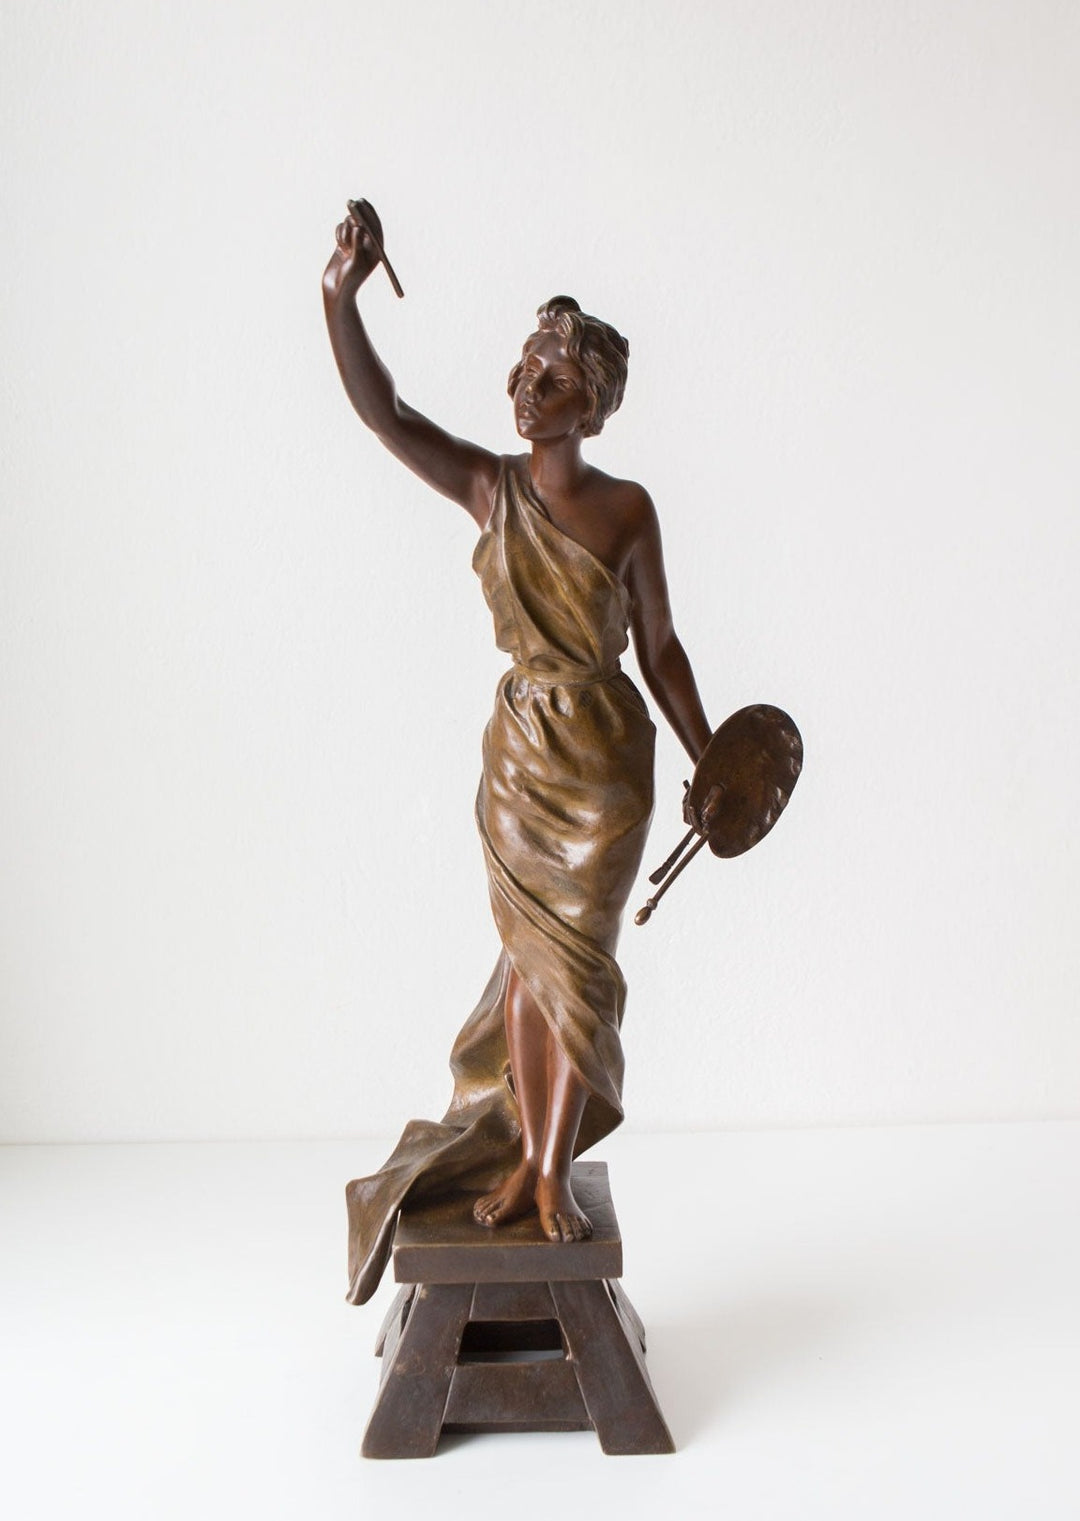 Escultura bronce art nouveau Villanis c. 1900 bronze female figure sculpture antique